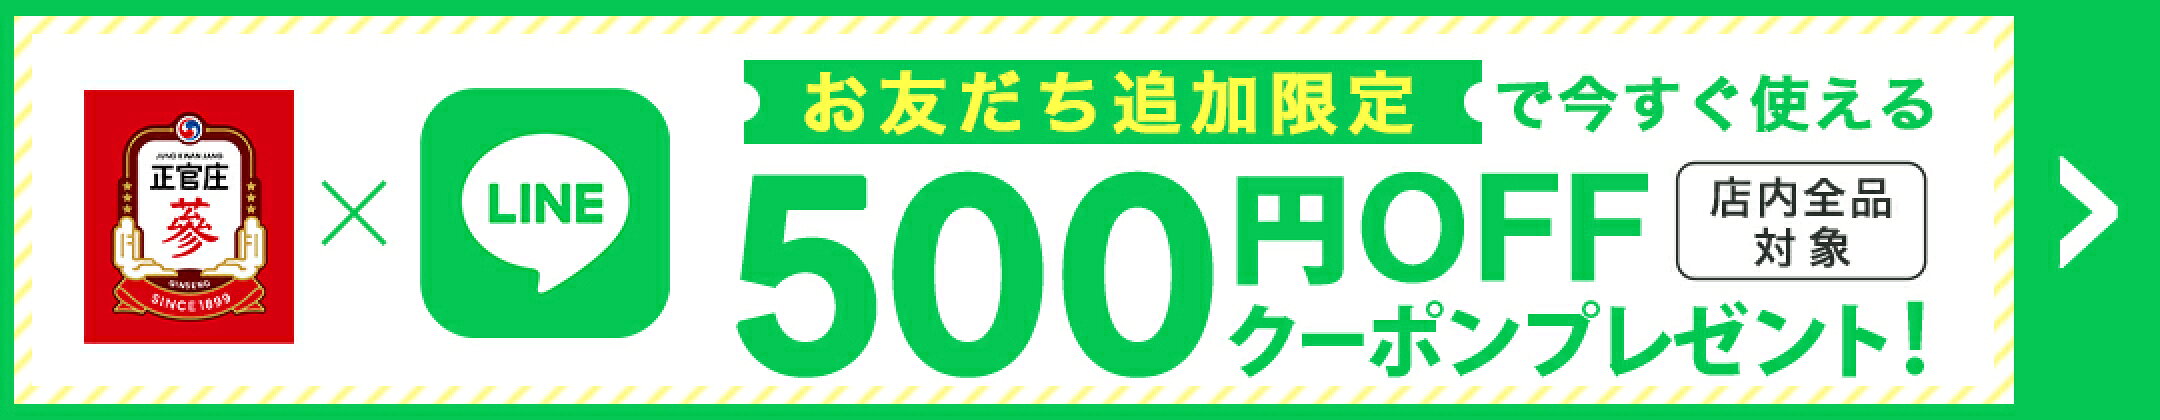 LINE登録で500円OFFクーポンプレゼント